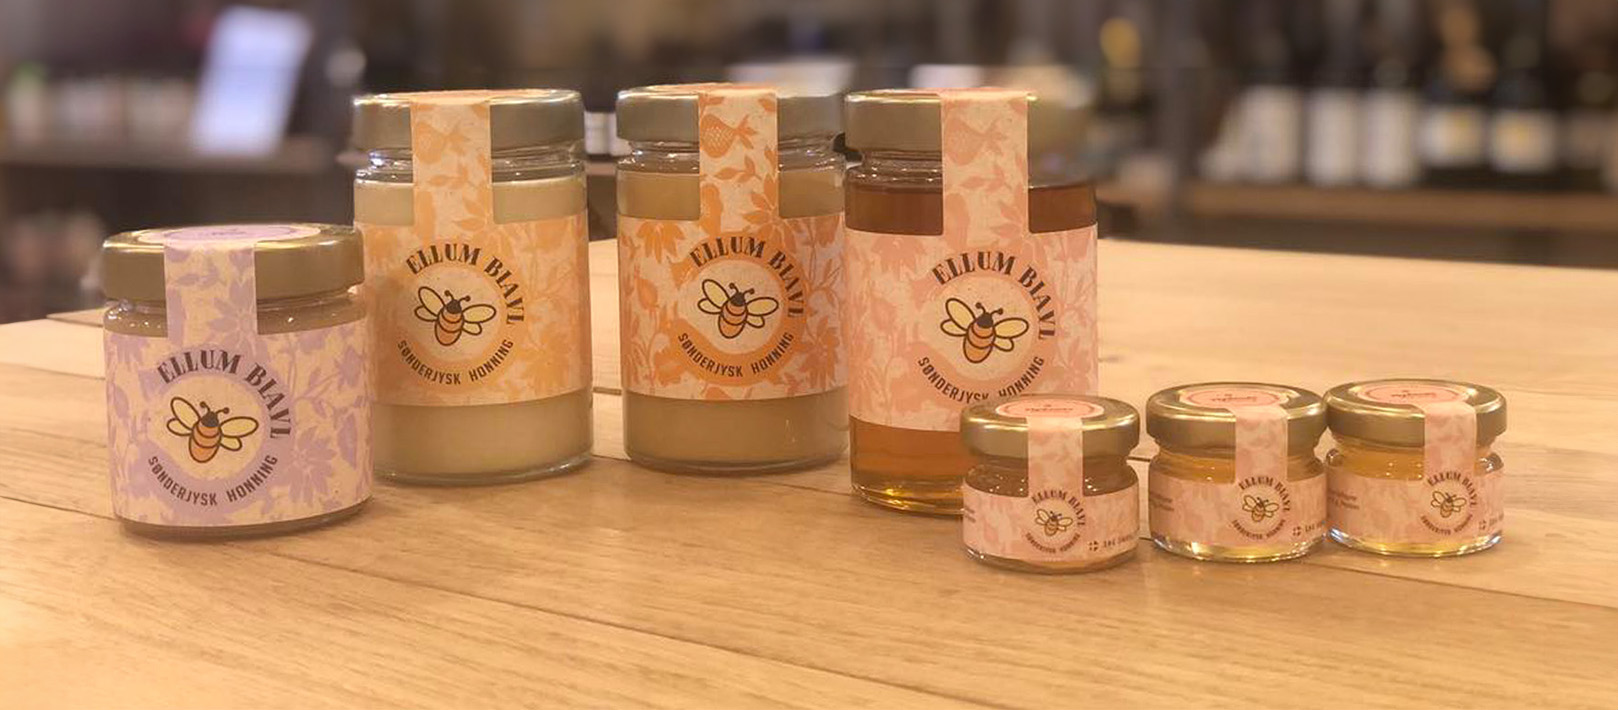 Store og små glas af forskellige slags honning fra Ellum Biavl